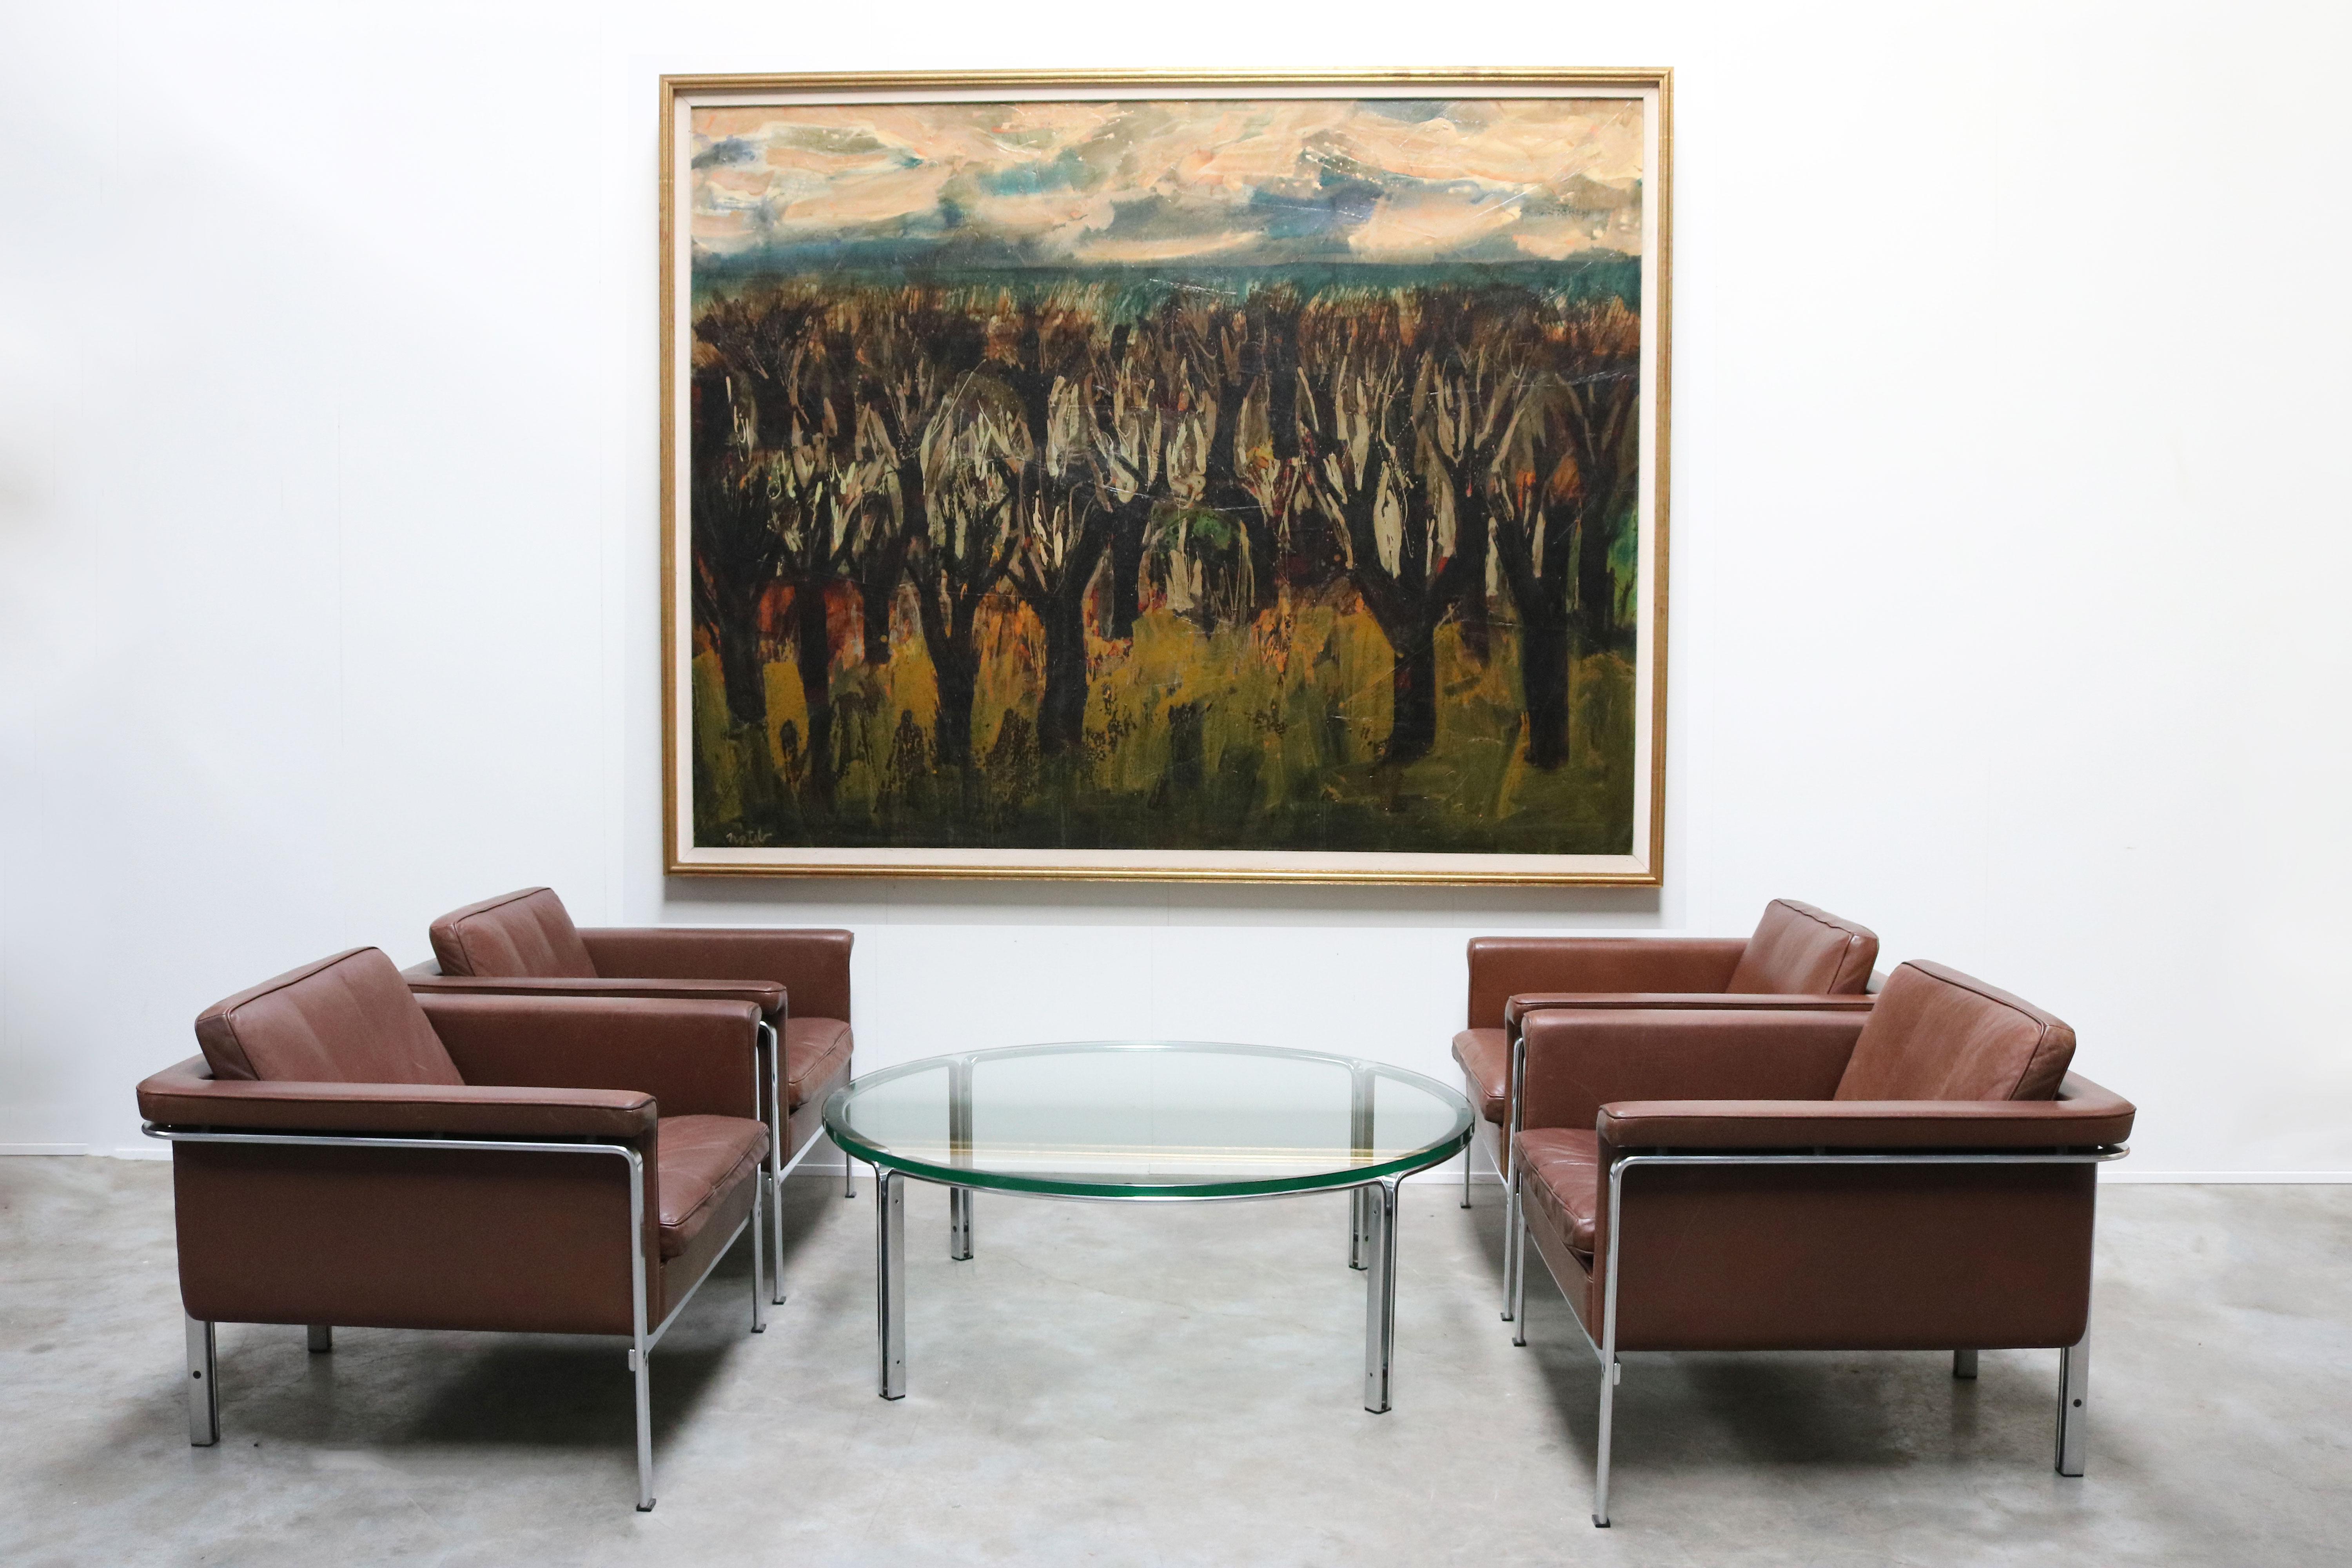 Impressionnant très grand tableau 210 cm x 170 cm du célèbre peintre belge Marcel Notebaert réalisé en 1950.
L'œuvre est intitulée : Volière Japonaise Kaleidoscopique 'atelier'.
Marcel Notebaert est un célèbre peintre belge qui a remporté le